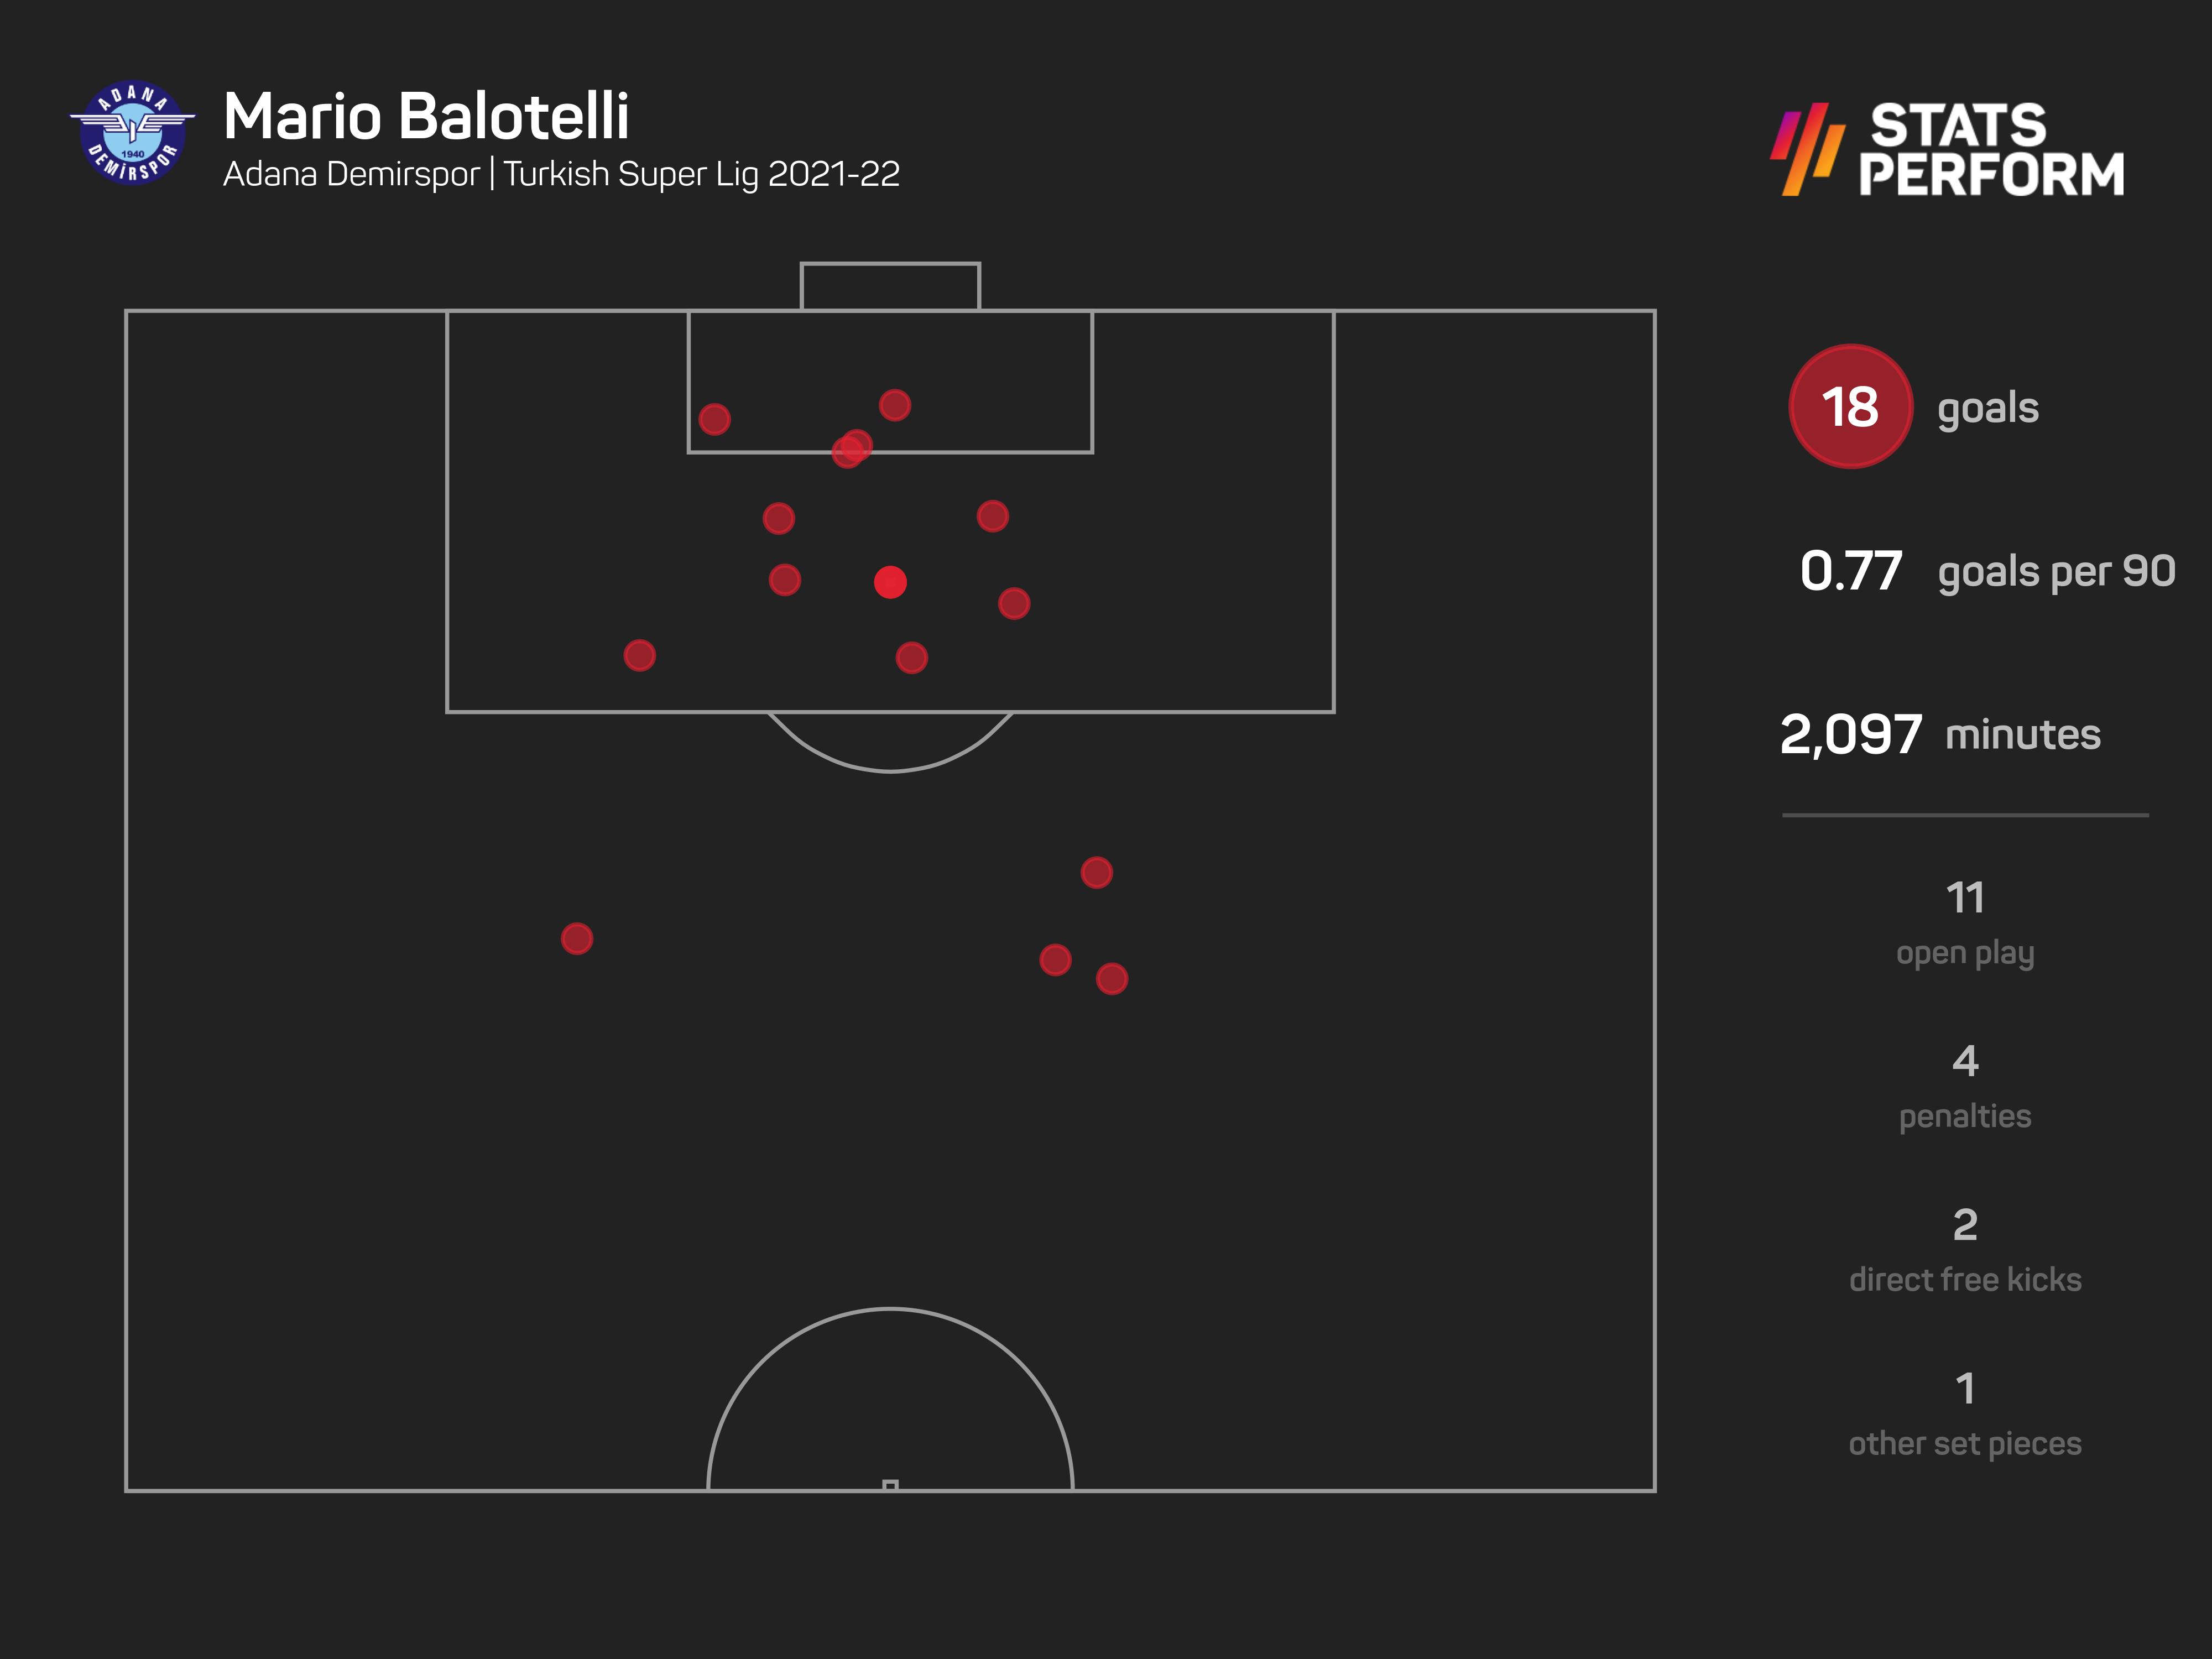 Mario Balotelli found form in Turkey last season